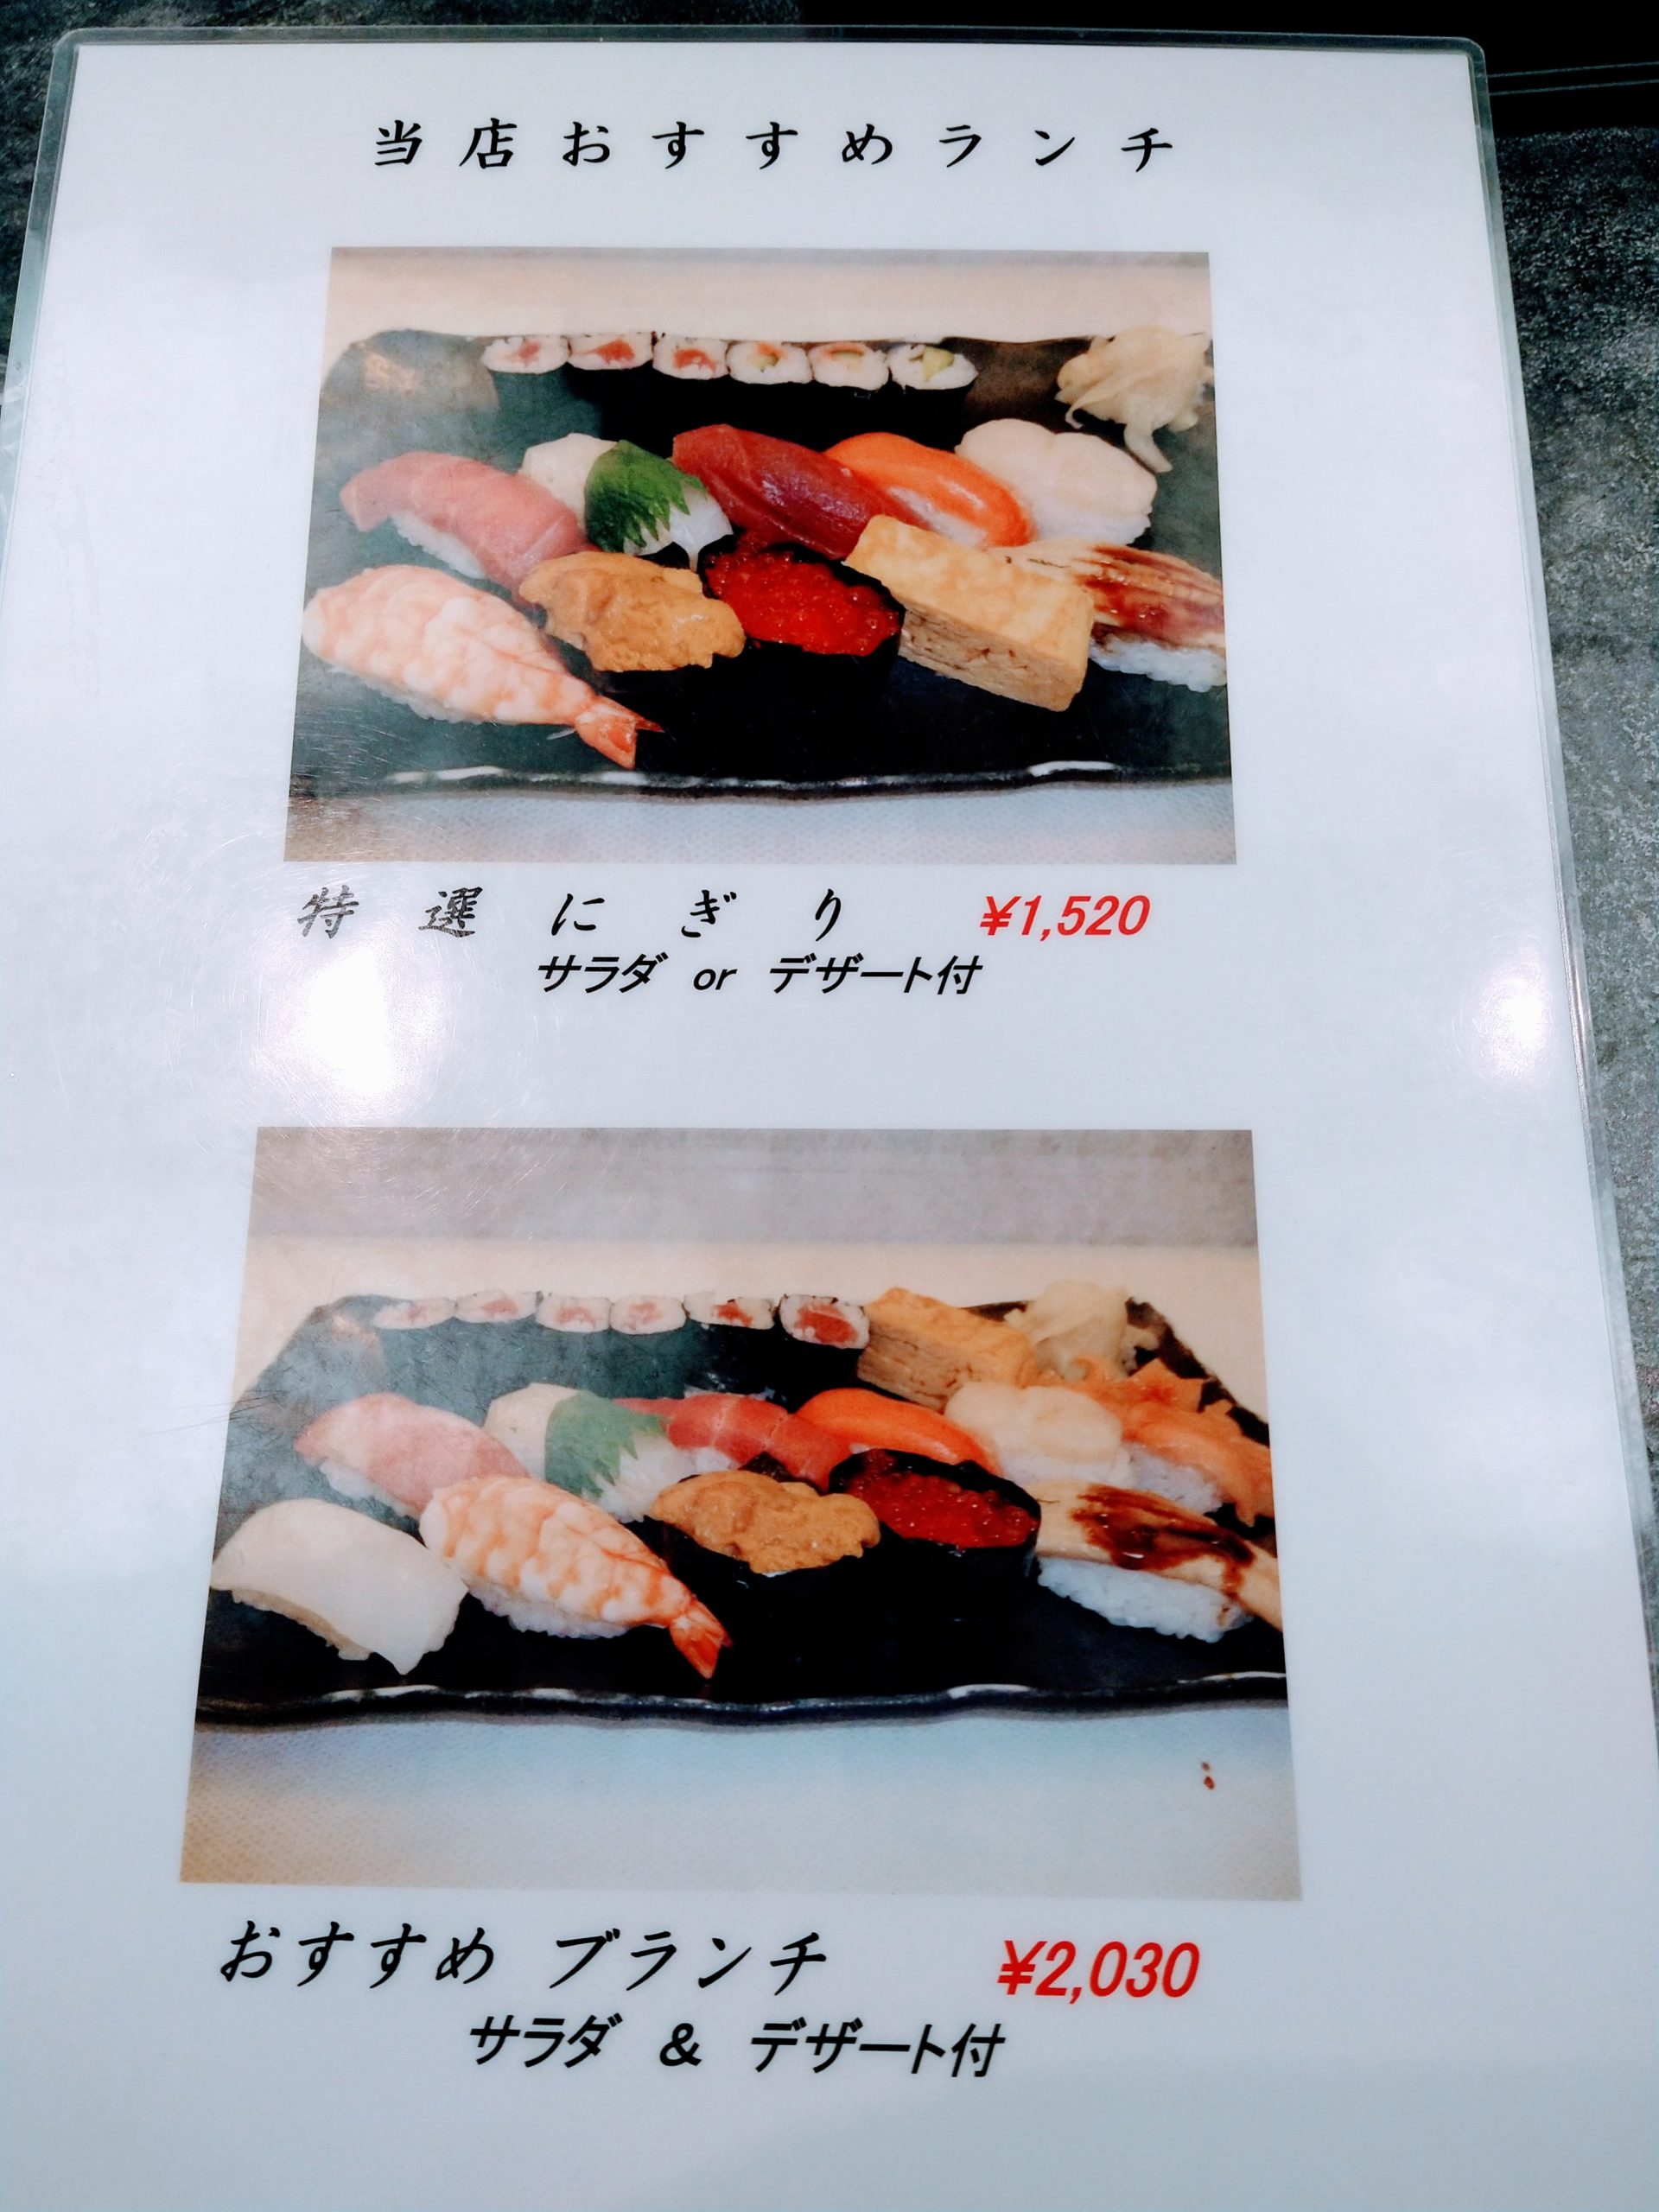 mikore-sushi-menu-03